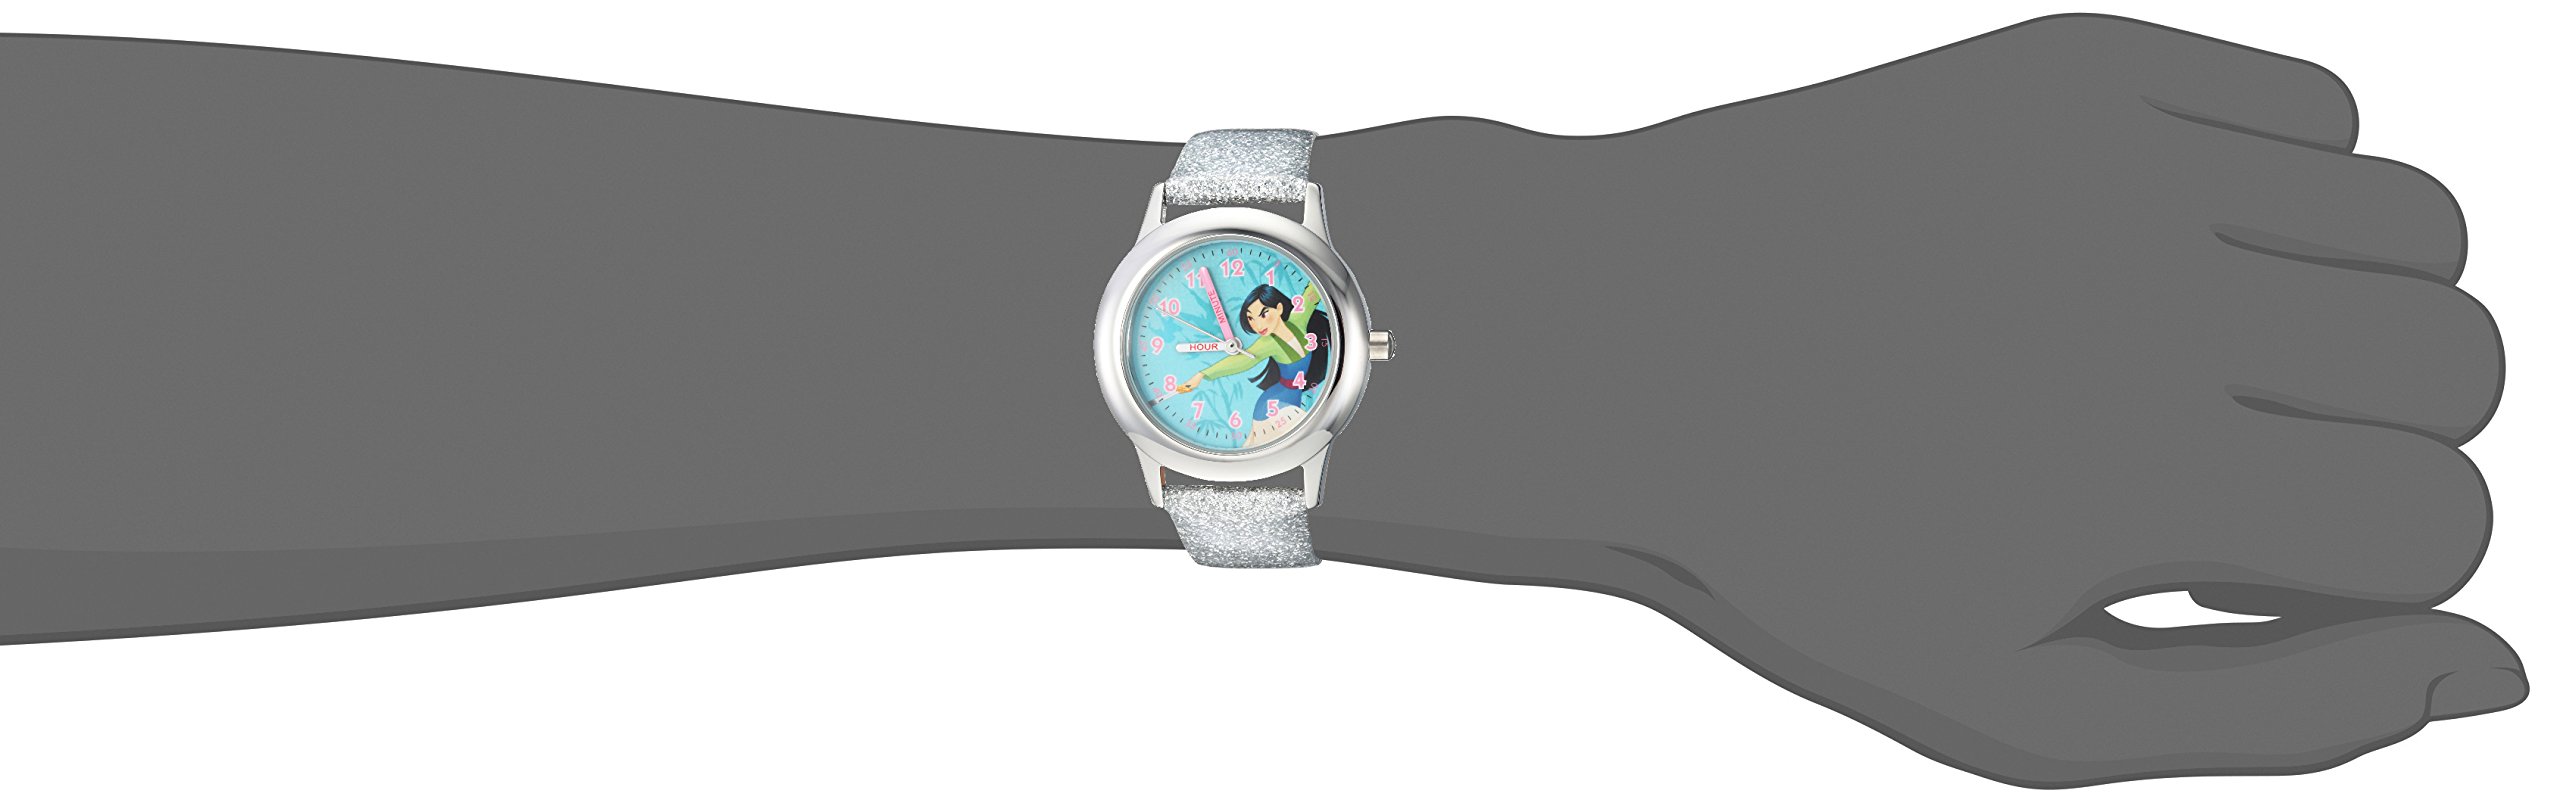 Disney Mulan Kids' WDS000204 Mulan Analog Display Analog Quartz Silver Watch